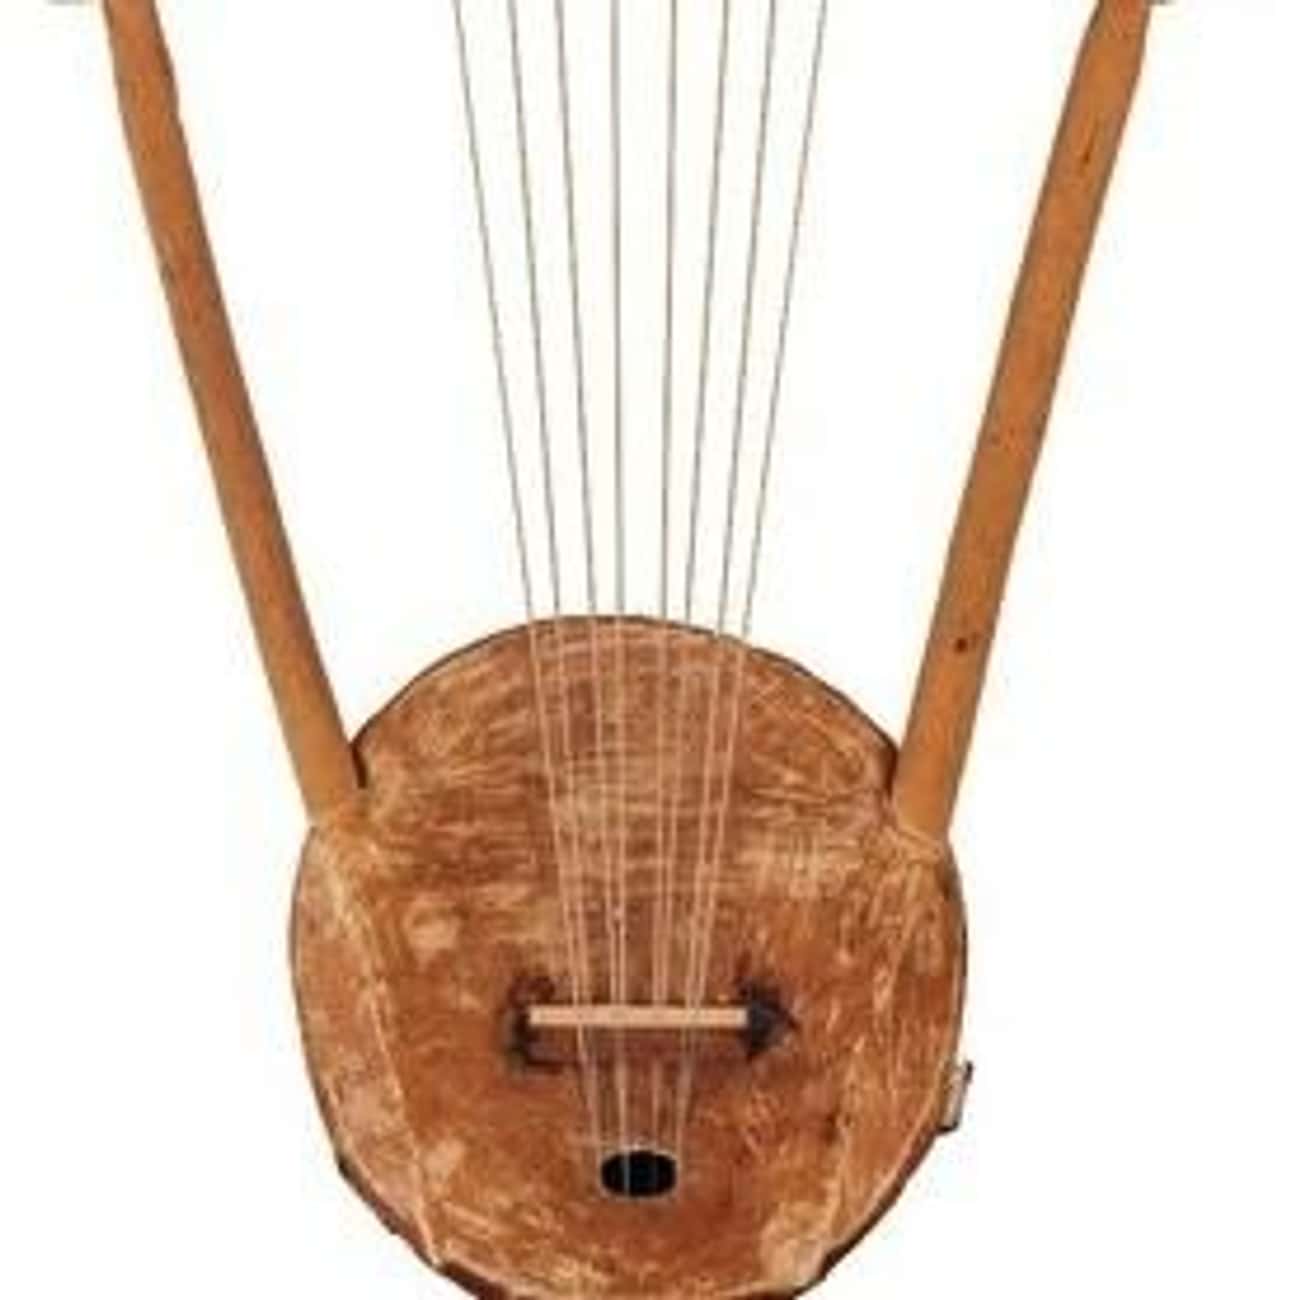 Музыкальные инструменты в древности. Лютня музыкальный инструмент древнего Египта. Музыкальные инструменты древнего Египта арфа.